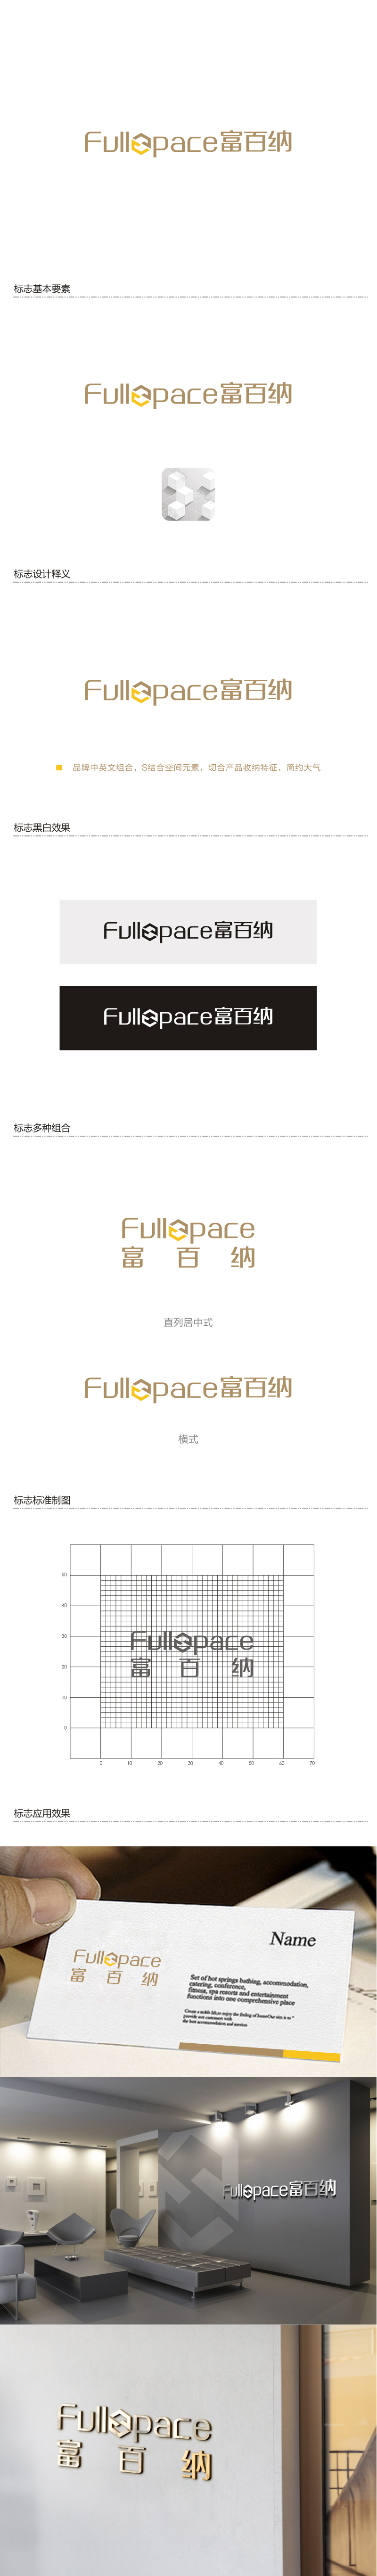 赵锡涛的FullSpace富百纳logo设计